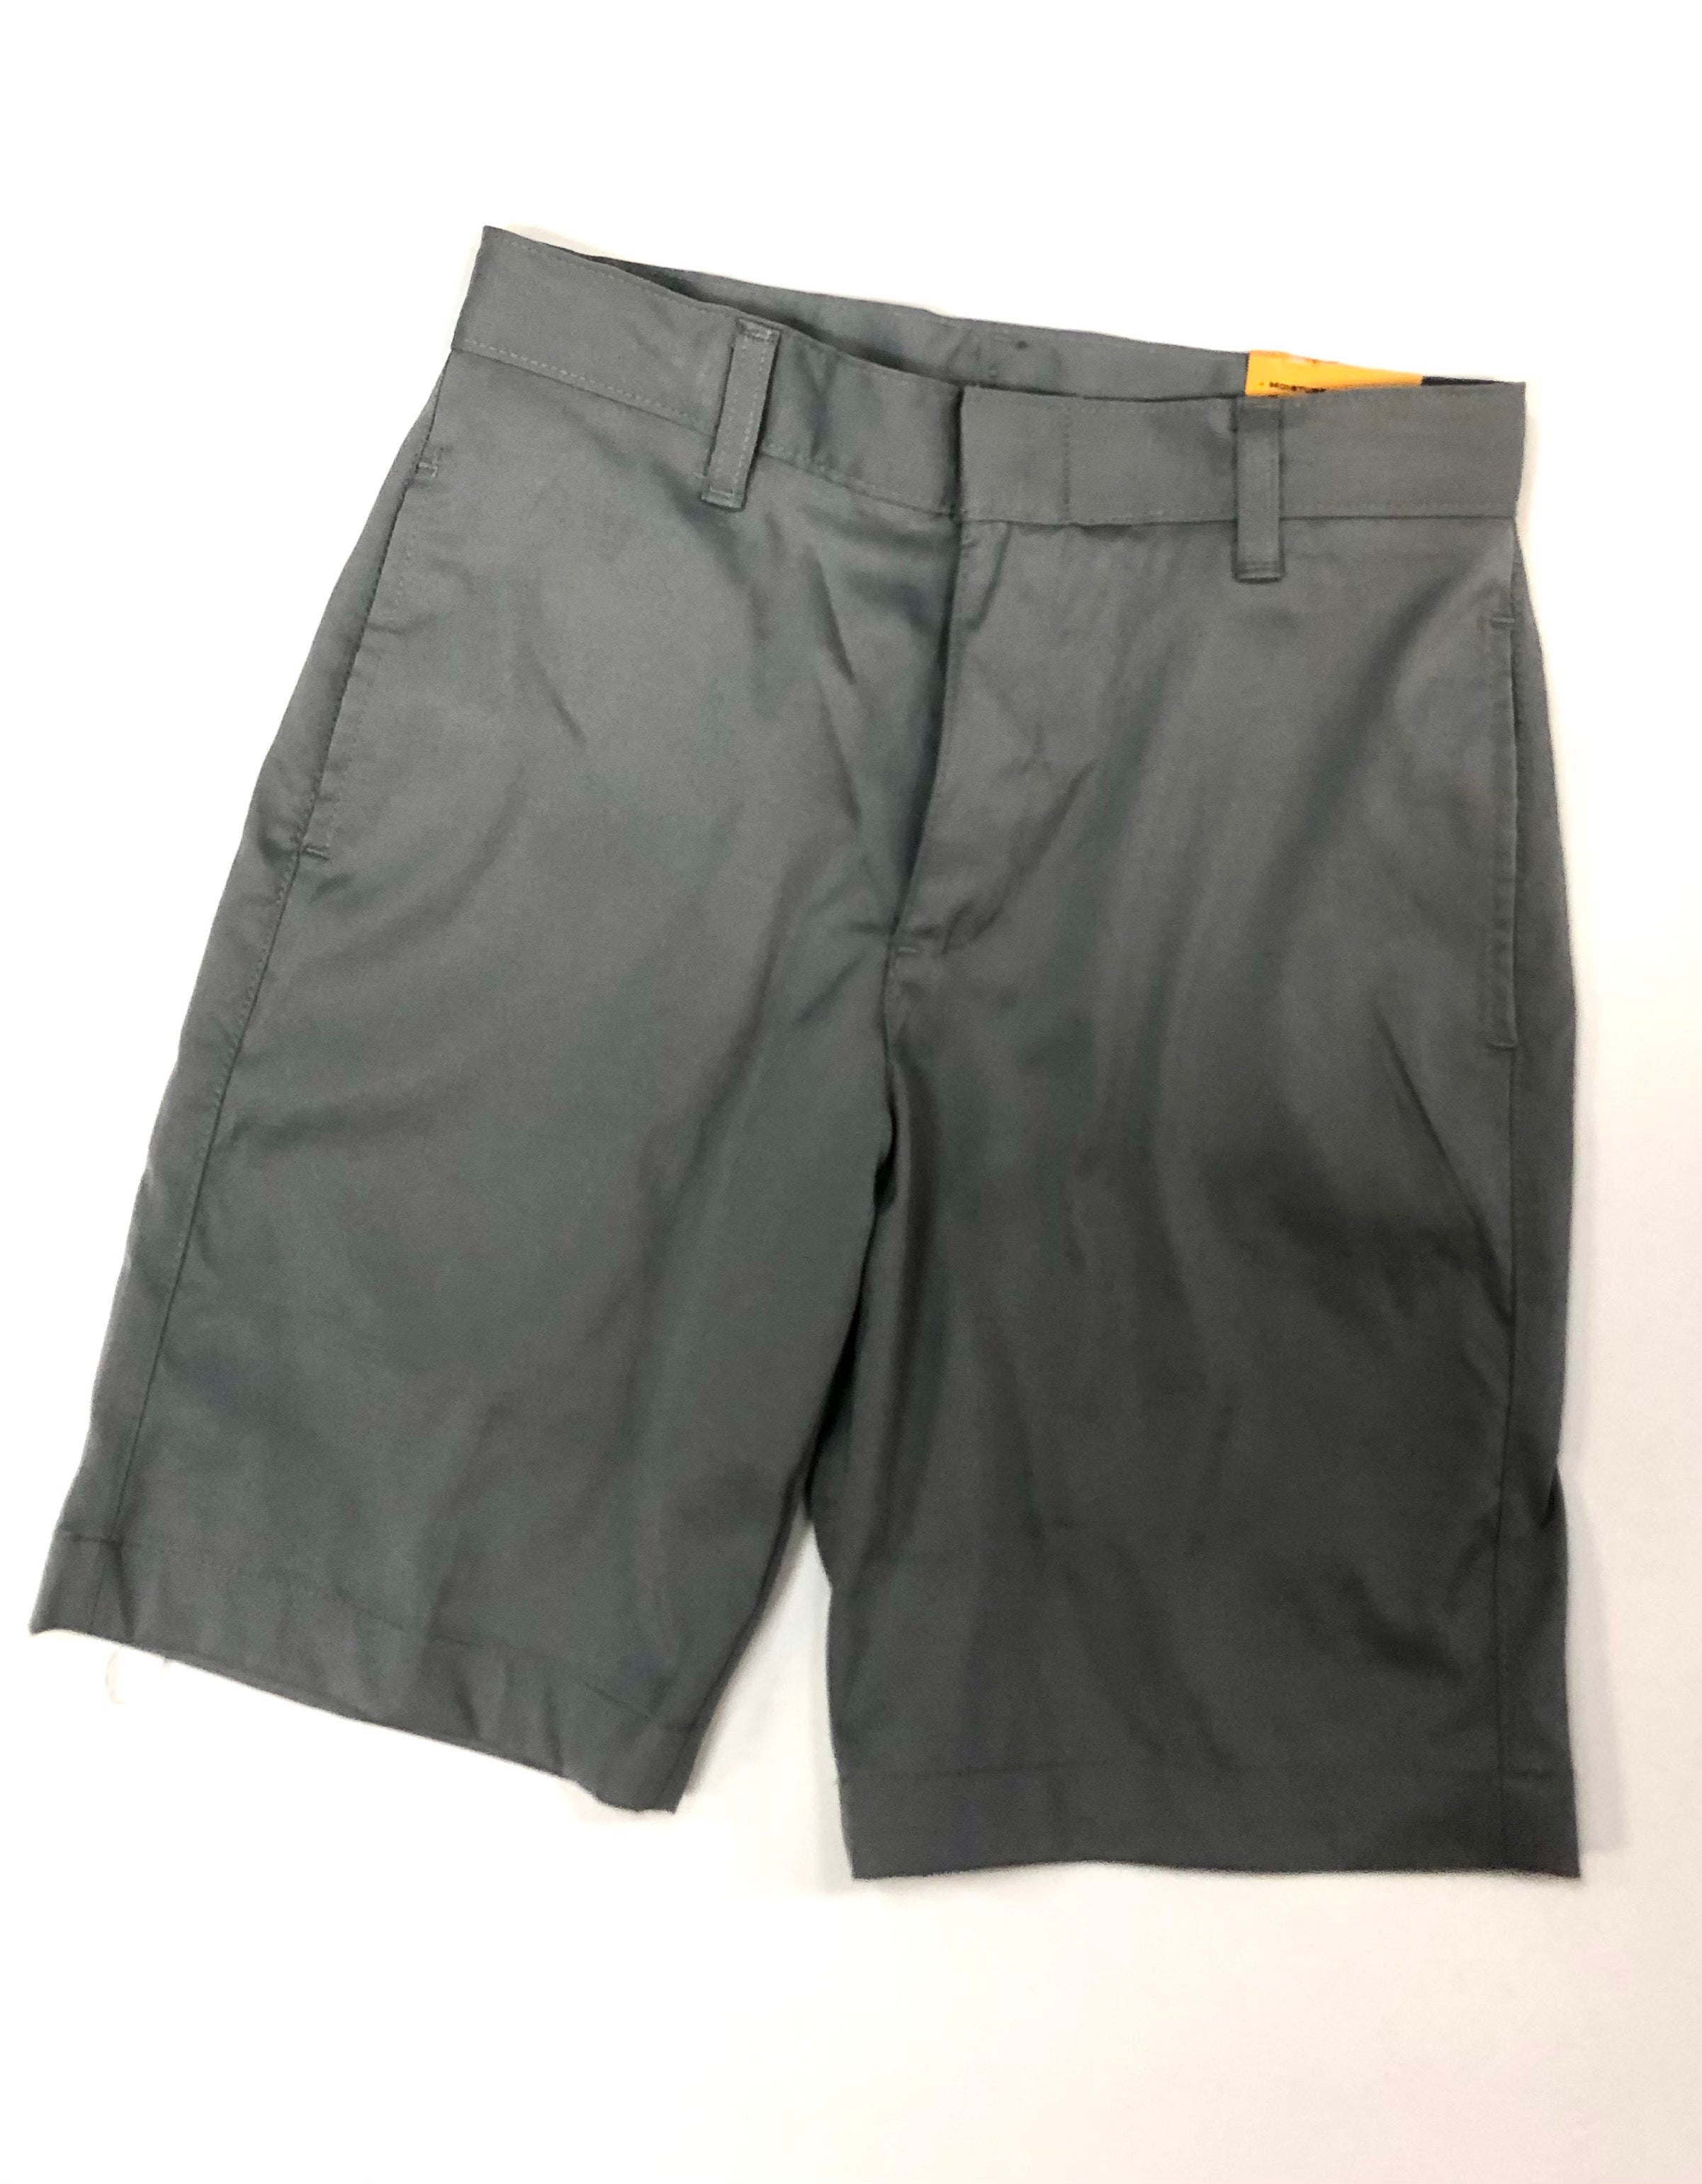 EW Boys DryFit Shorts Grey – Uniformity Lafayette